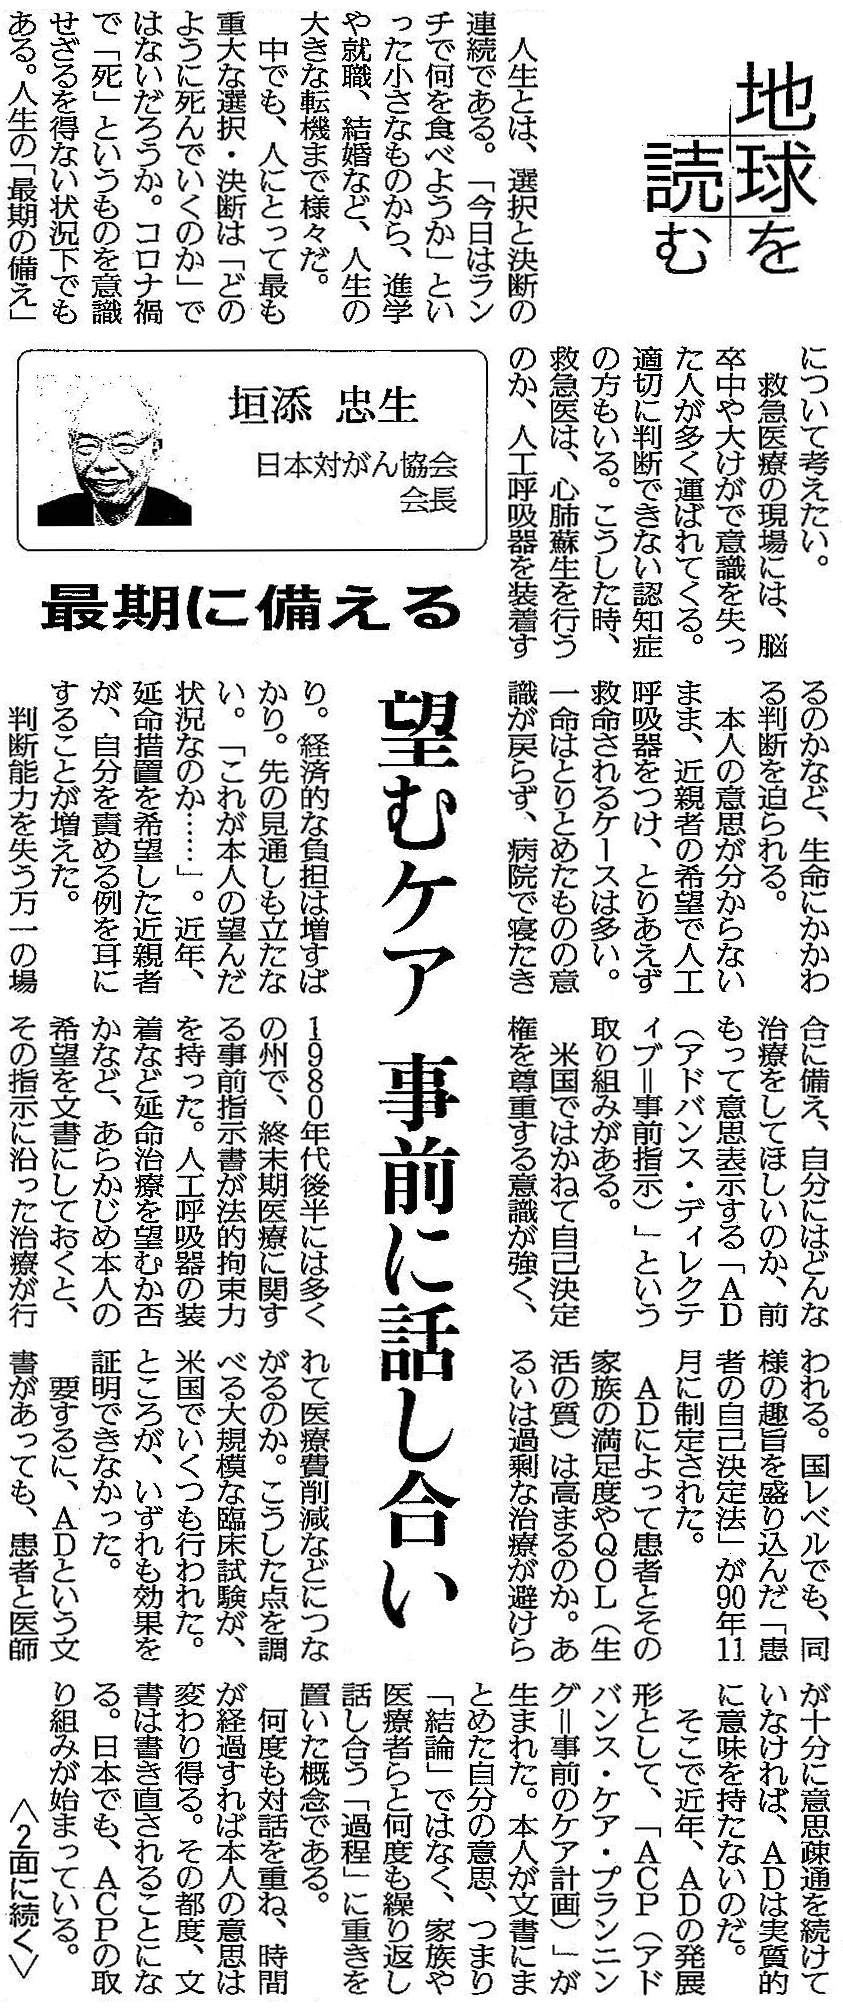 読売新聞 2021年8月22日 掲載記事